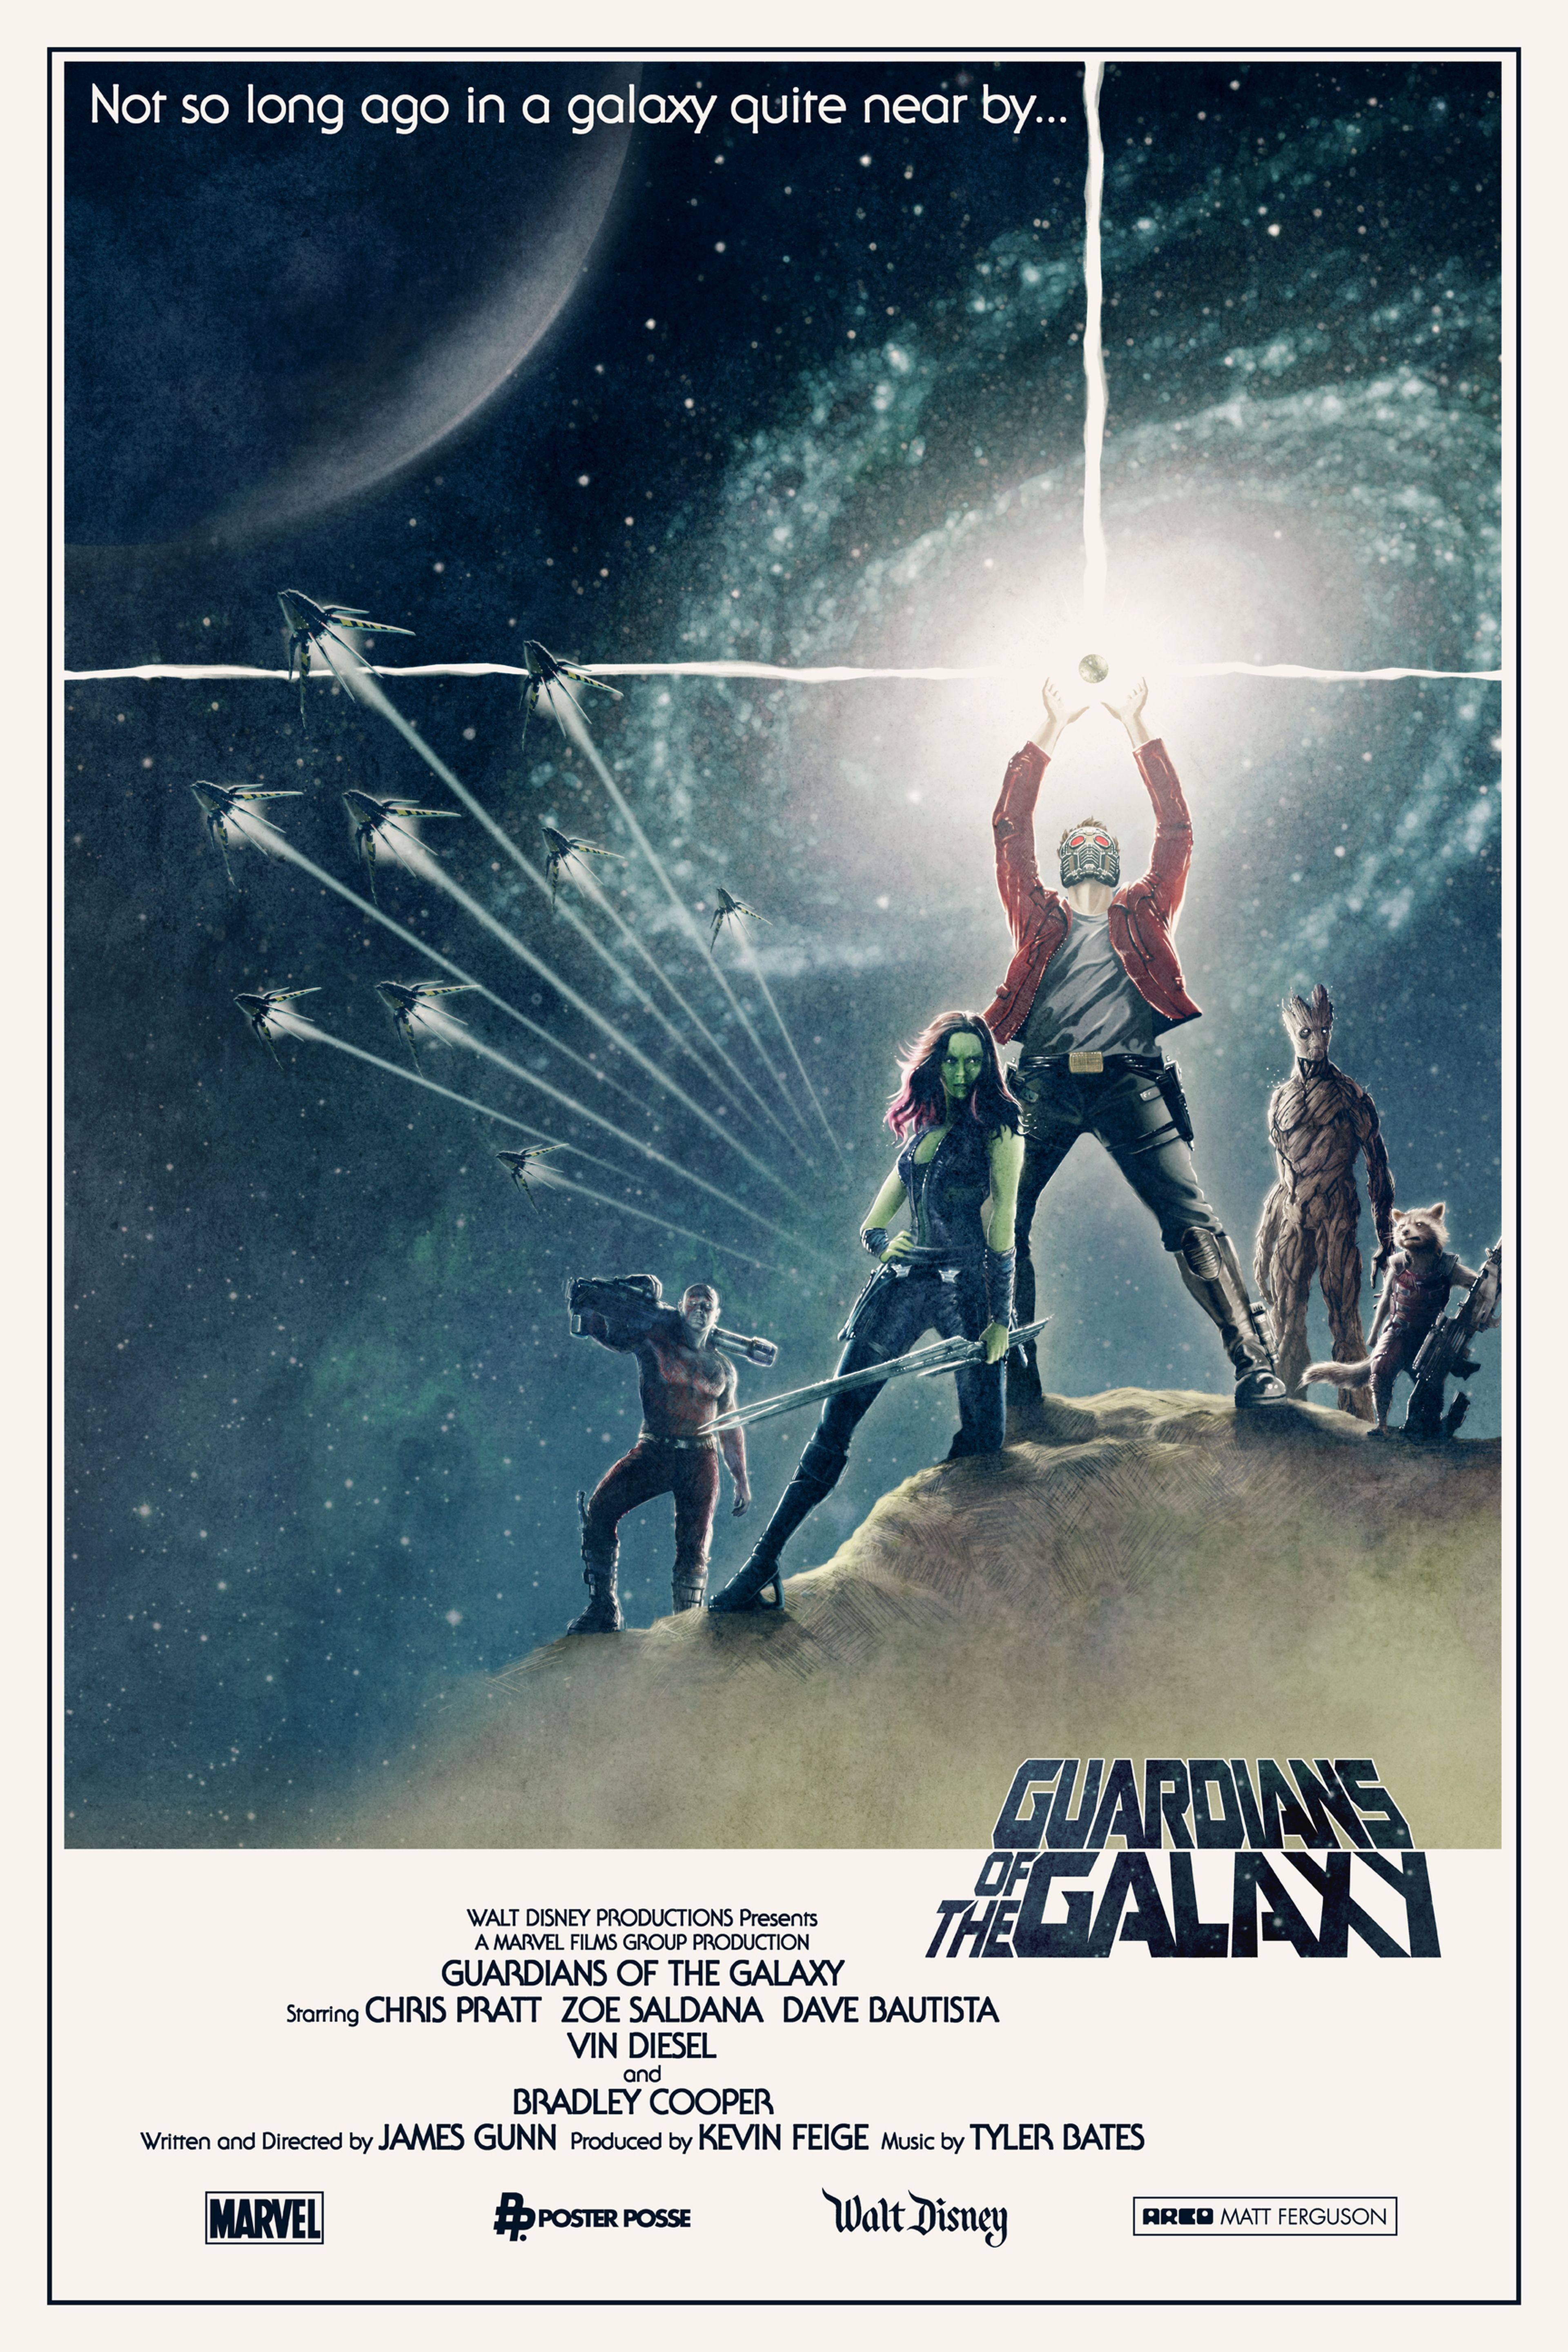 Galería del fan-art de Guardianes de la Galaxia que inunda la red